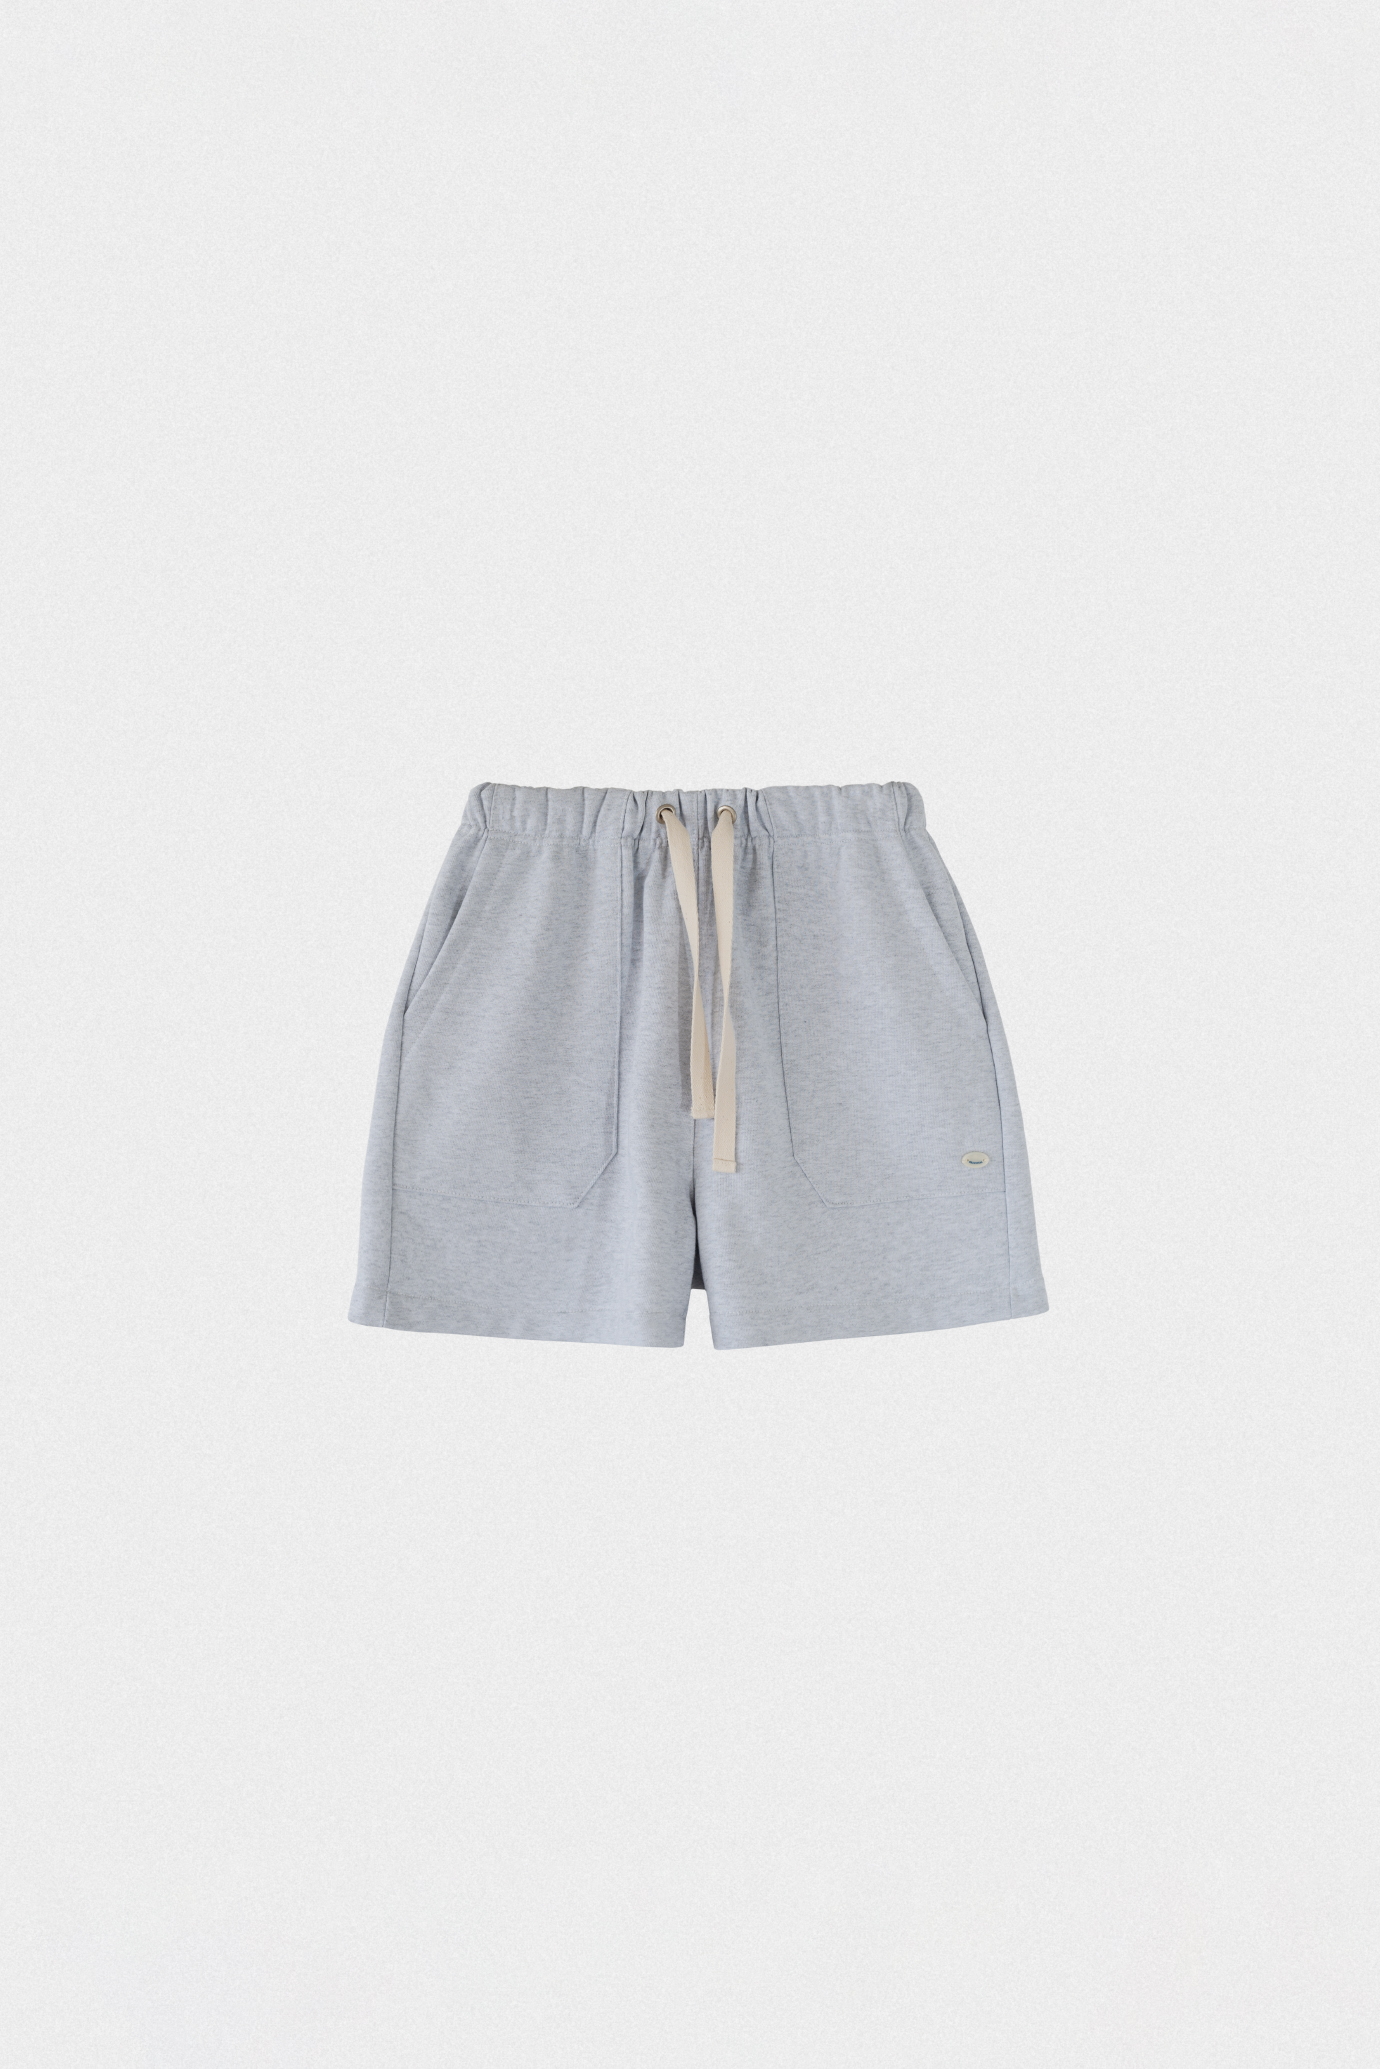 27144_Cotton Shorts